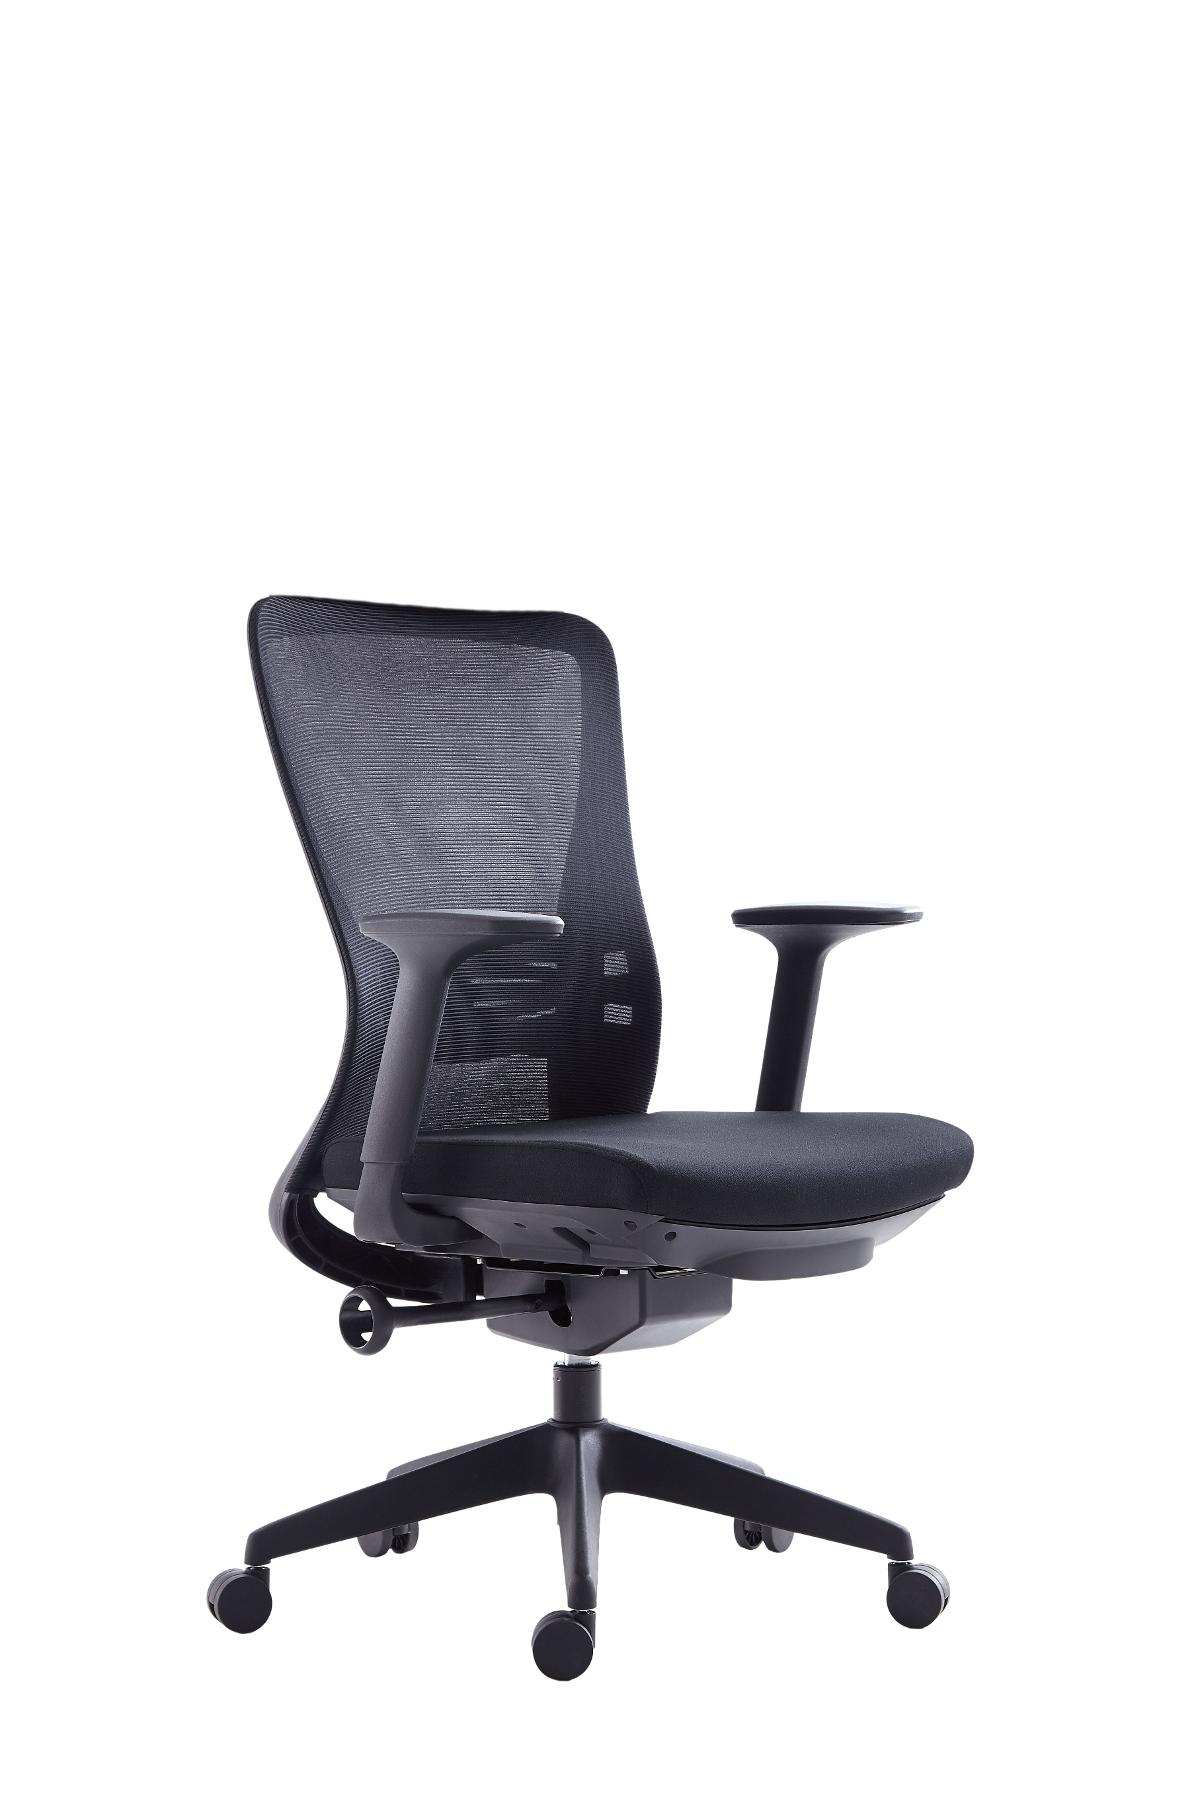 Super Chair เก้าอี้สำนักงาน รุ่น M123-1 M Black